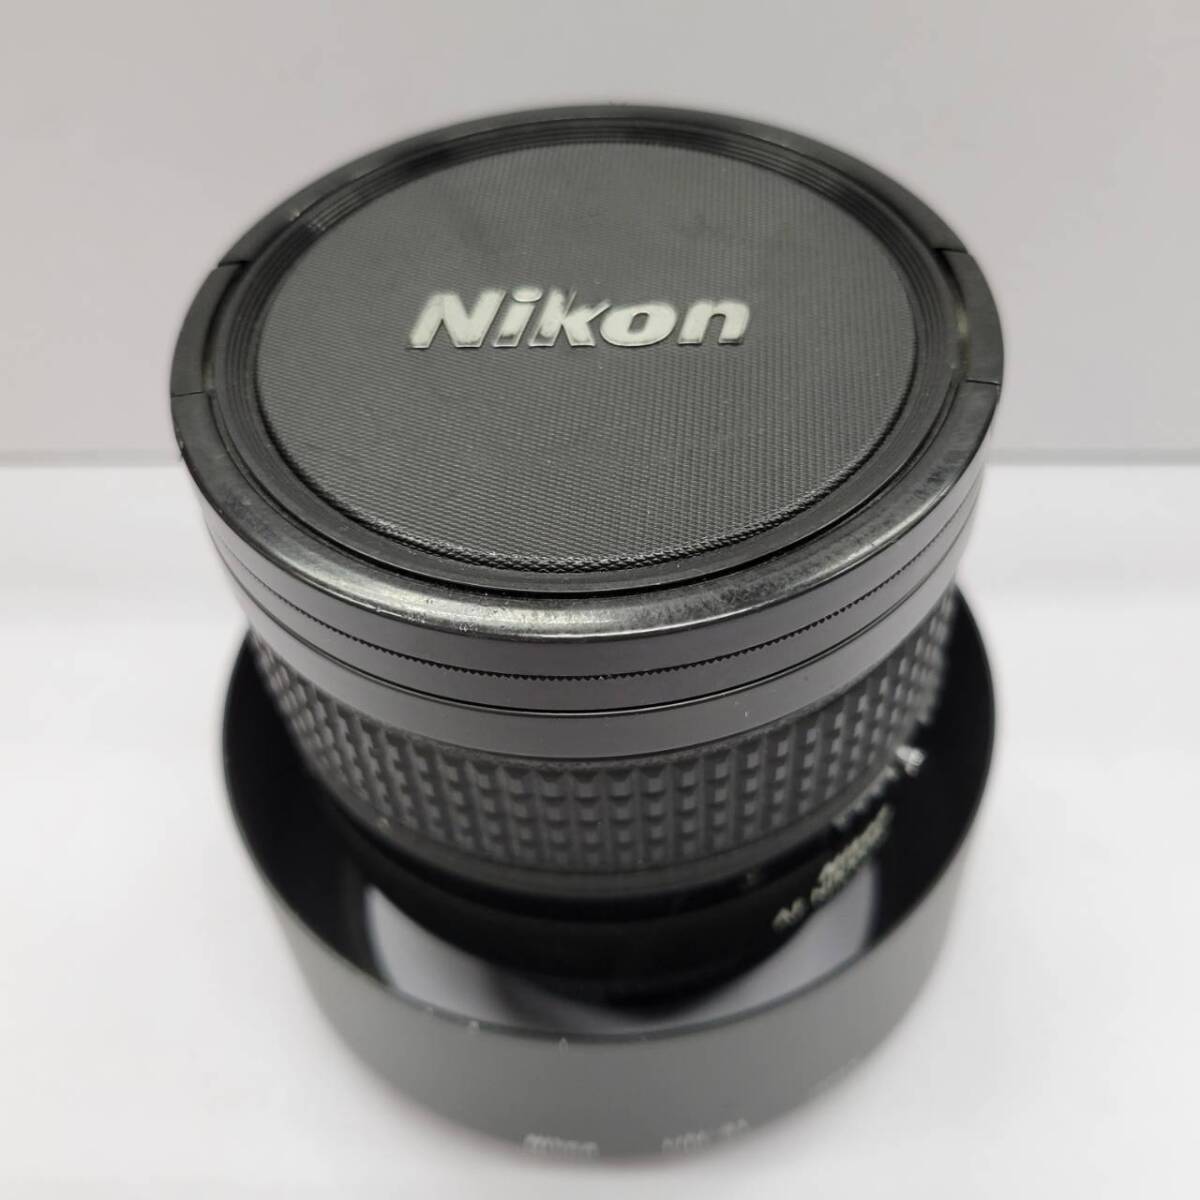 ★【在庫処分価格】Nikon 単焦点レンズ Ai AF Nikkor 85mm f/1.4D IF フルサイズ対応☆T04-111aの画像1